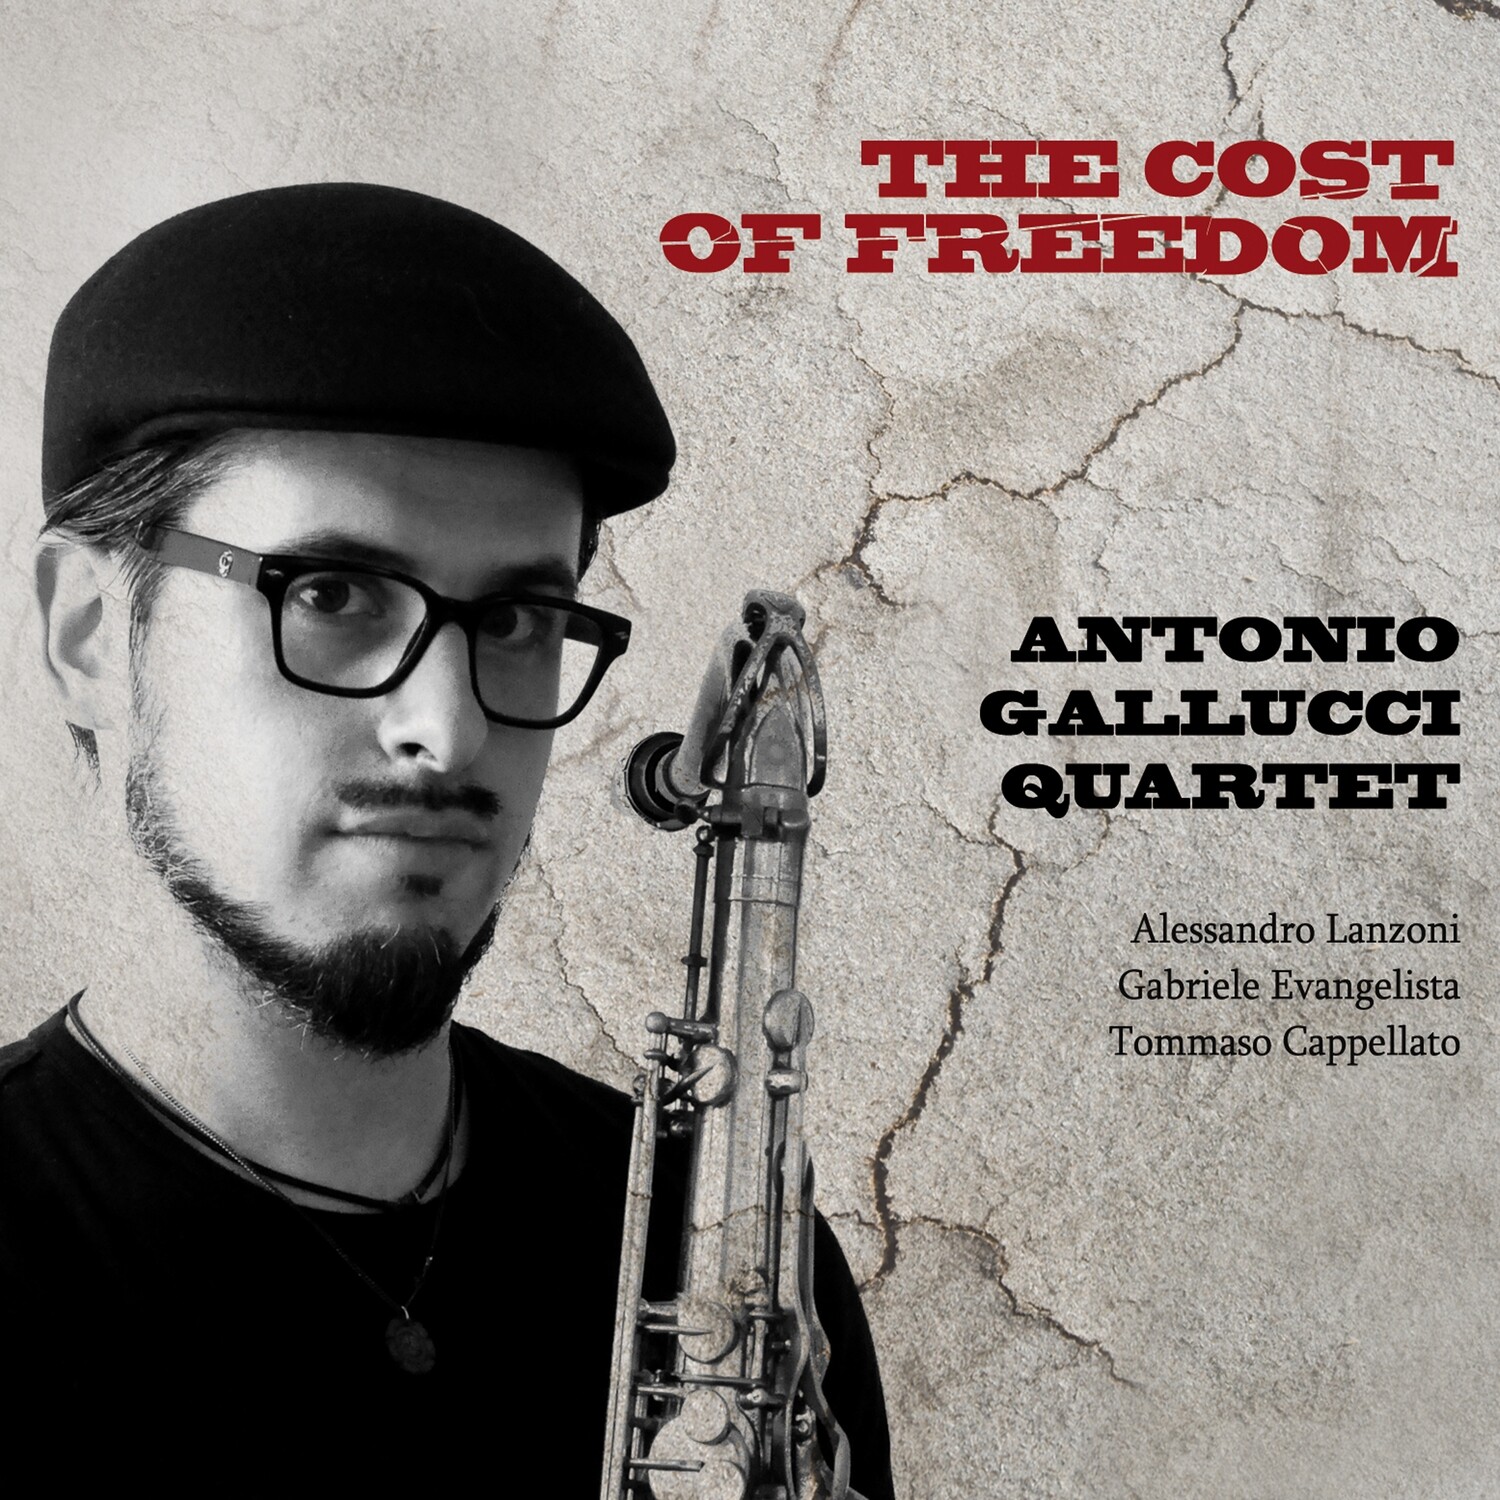 ANTONIO GALLUCCI QUARTET «The cost of freedom»